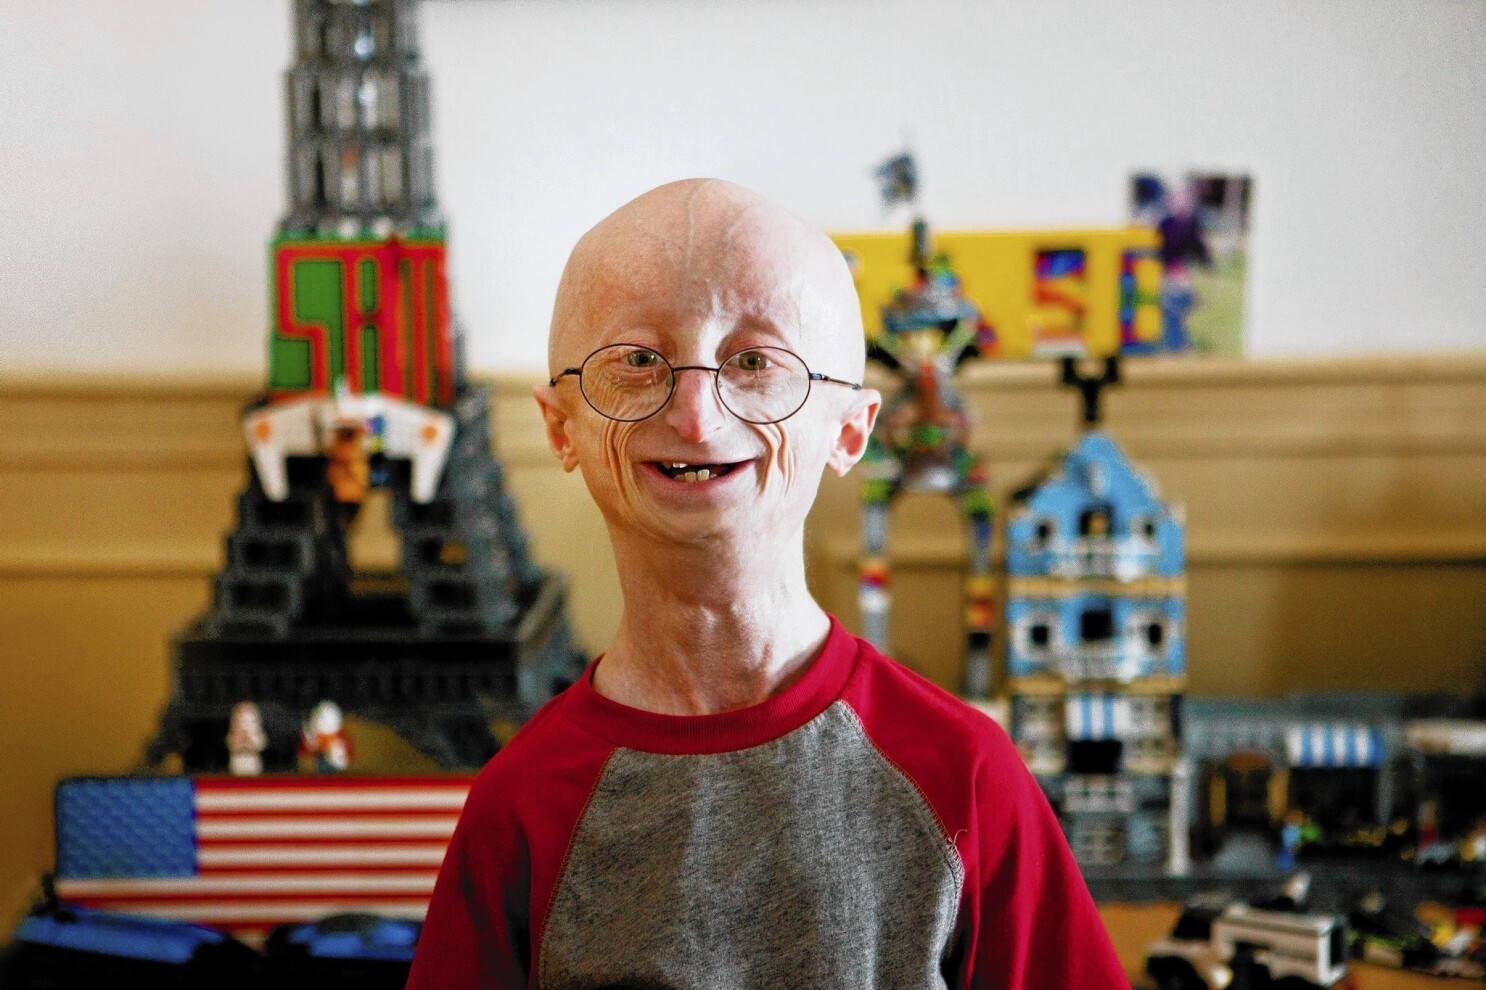 Progeria (pro-JEER-e-uh) یا پروجریا که همچنین به عنوان سندرم هاچینسون-گیلفورد شناخته می شود، یک اختلال ژنتیکی بسیار نادر و پیشرونده است که باعث می شود کودکان به سرعت پیر شوند و از دو سال اول زندگی شروع می شود.
کودکان مبتلا به پروجریا معمولا در بدو تولد طبیعی به نظر می رسند. در طول سال اول، علائم و نشانه هایی مانند رشد آهسته و ریزش مو شروع می شود.
